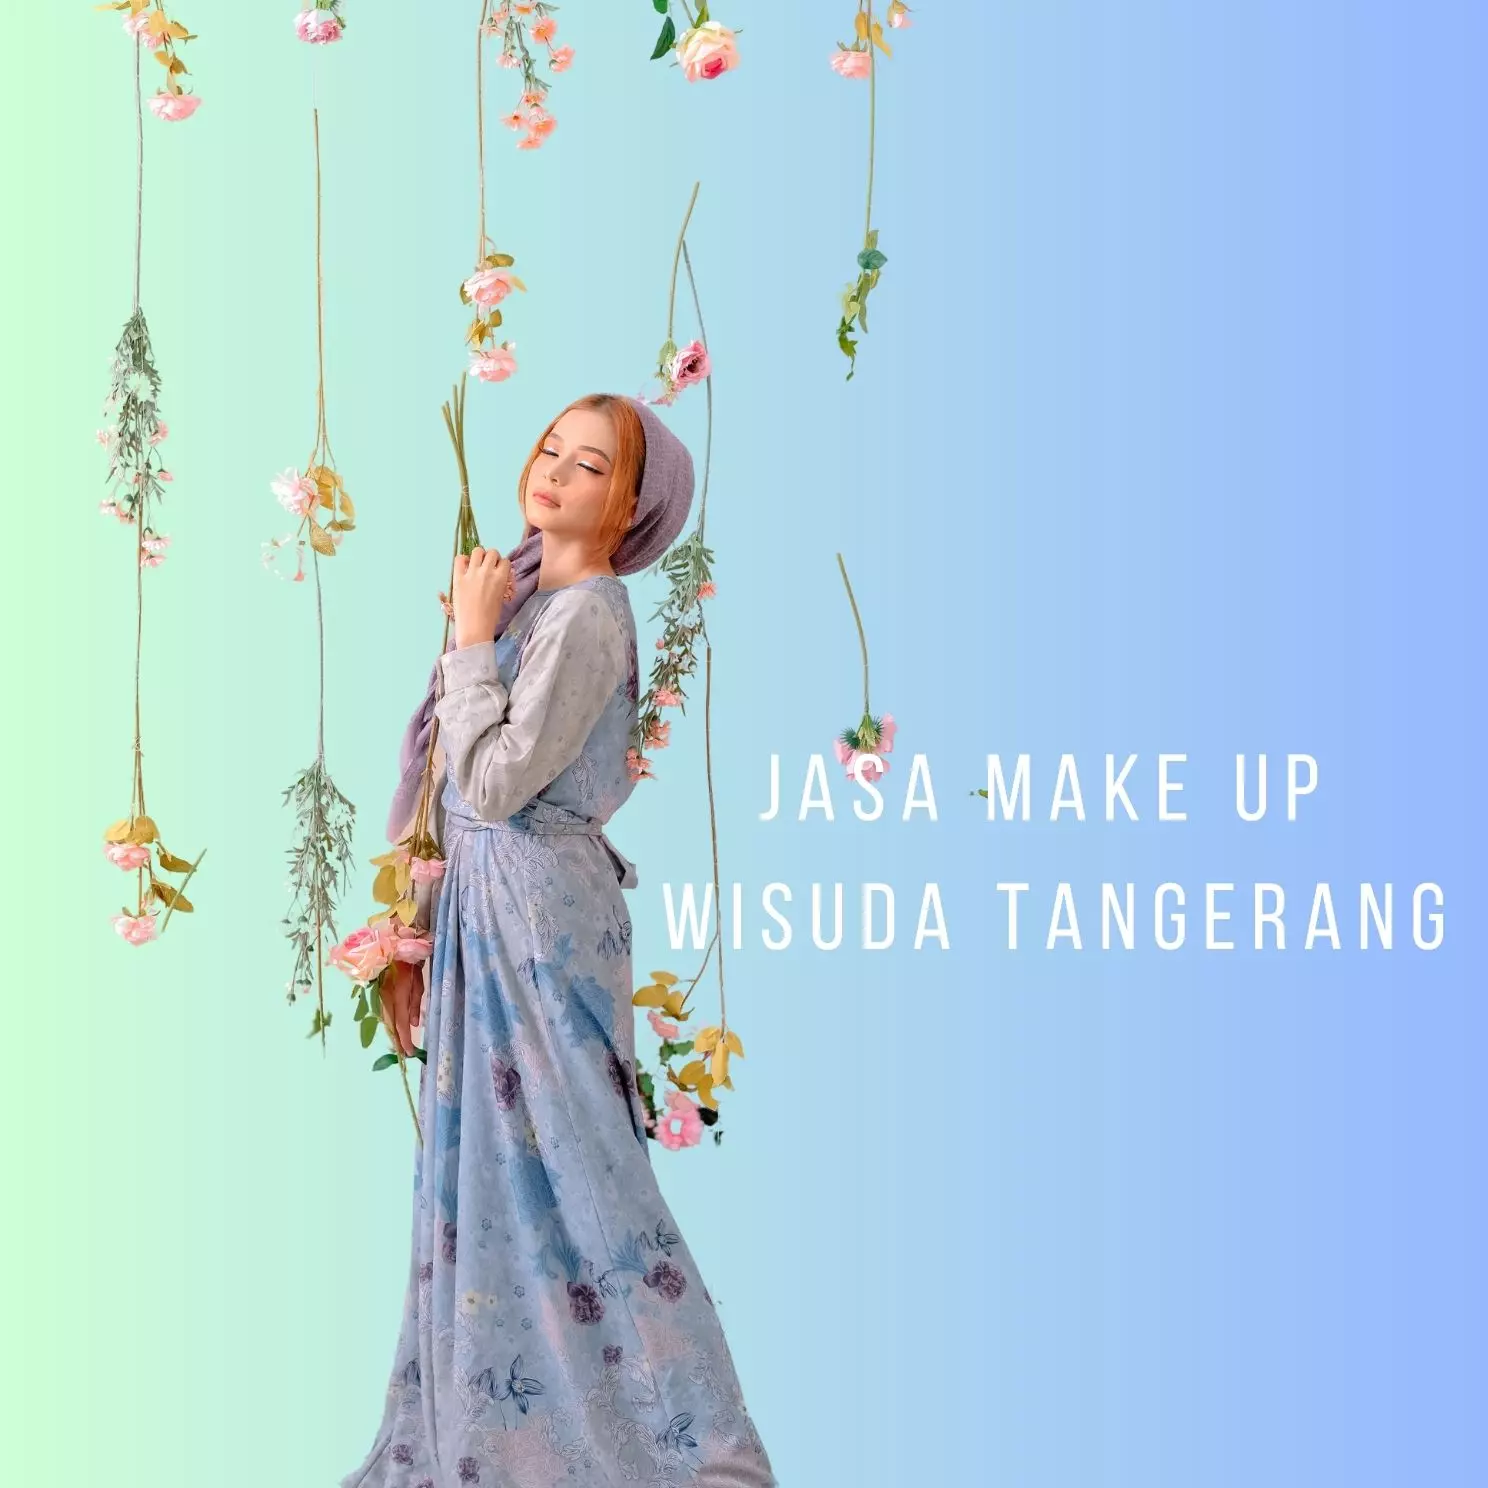 Jasa Make Up Wisuda Tangerang